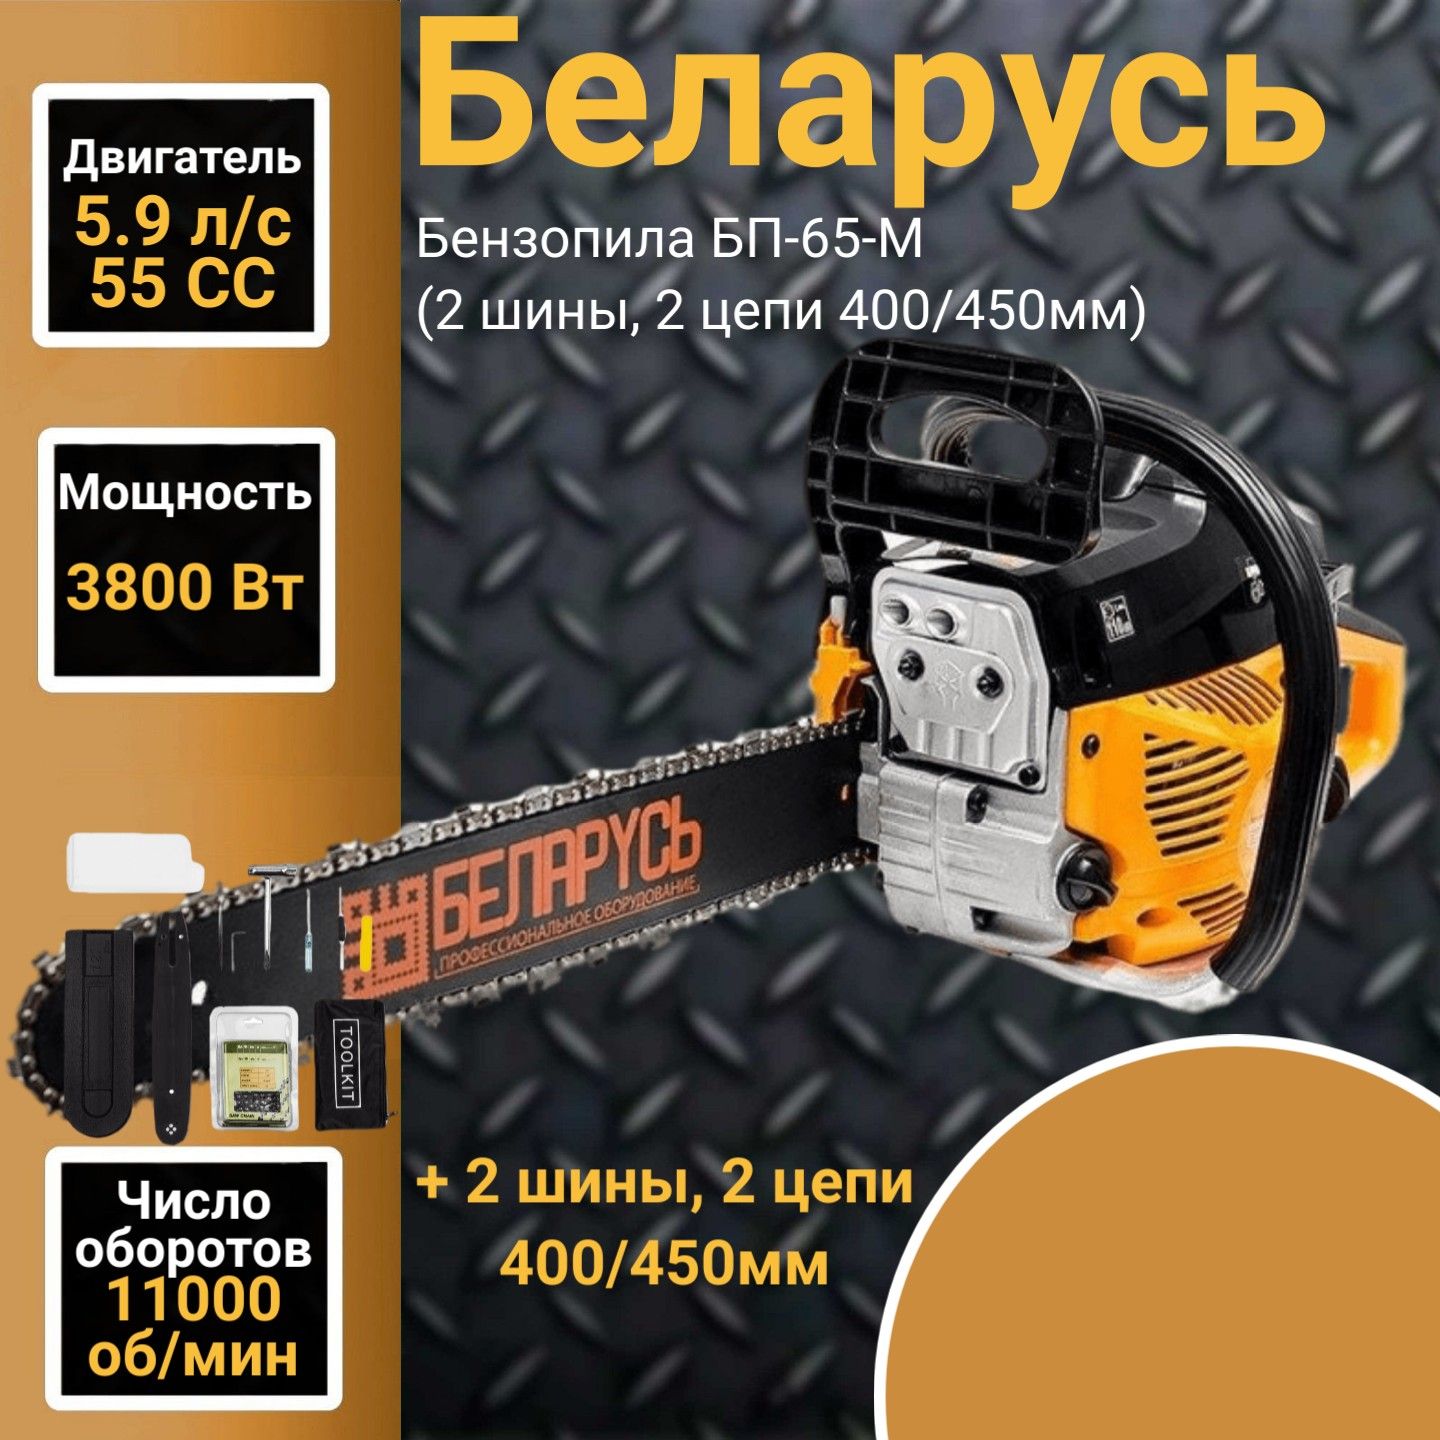 Бензопила Беларусь БП-65-M 240 5,9 л.с.